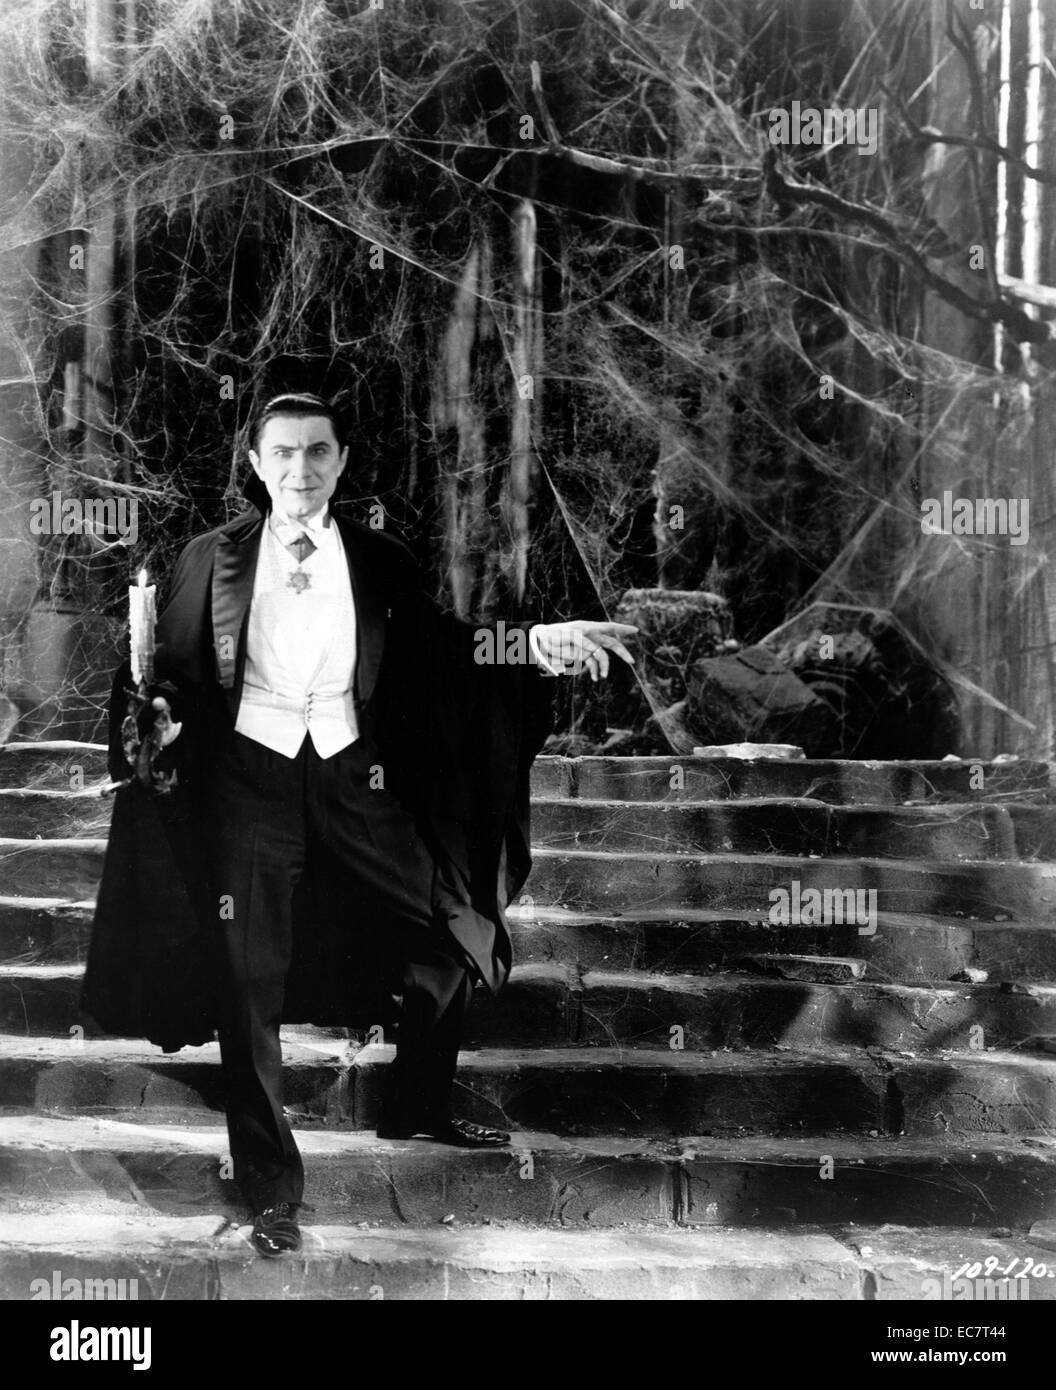 Dracula ist ein 1931 Vampir-Horror Film unter der Regie von Tod Browning und starring Bela Lugosi als Titel Charakter. Der Film wurde von Universal produziert und ist auf dem 1924 Theaterstück Dracula durch Hamilton Deane und John L. Balderston, die wiederum lose auf dem Roman Dracula von Bram Stoker basiert Stockfoto